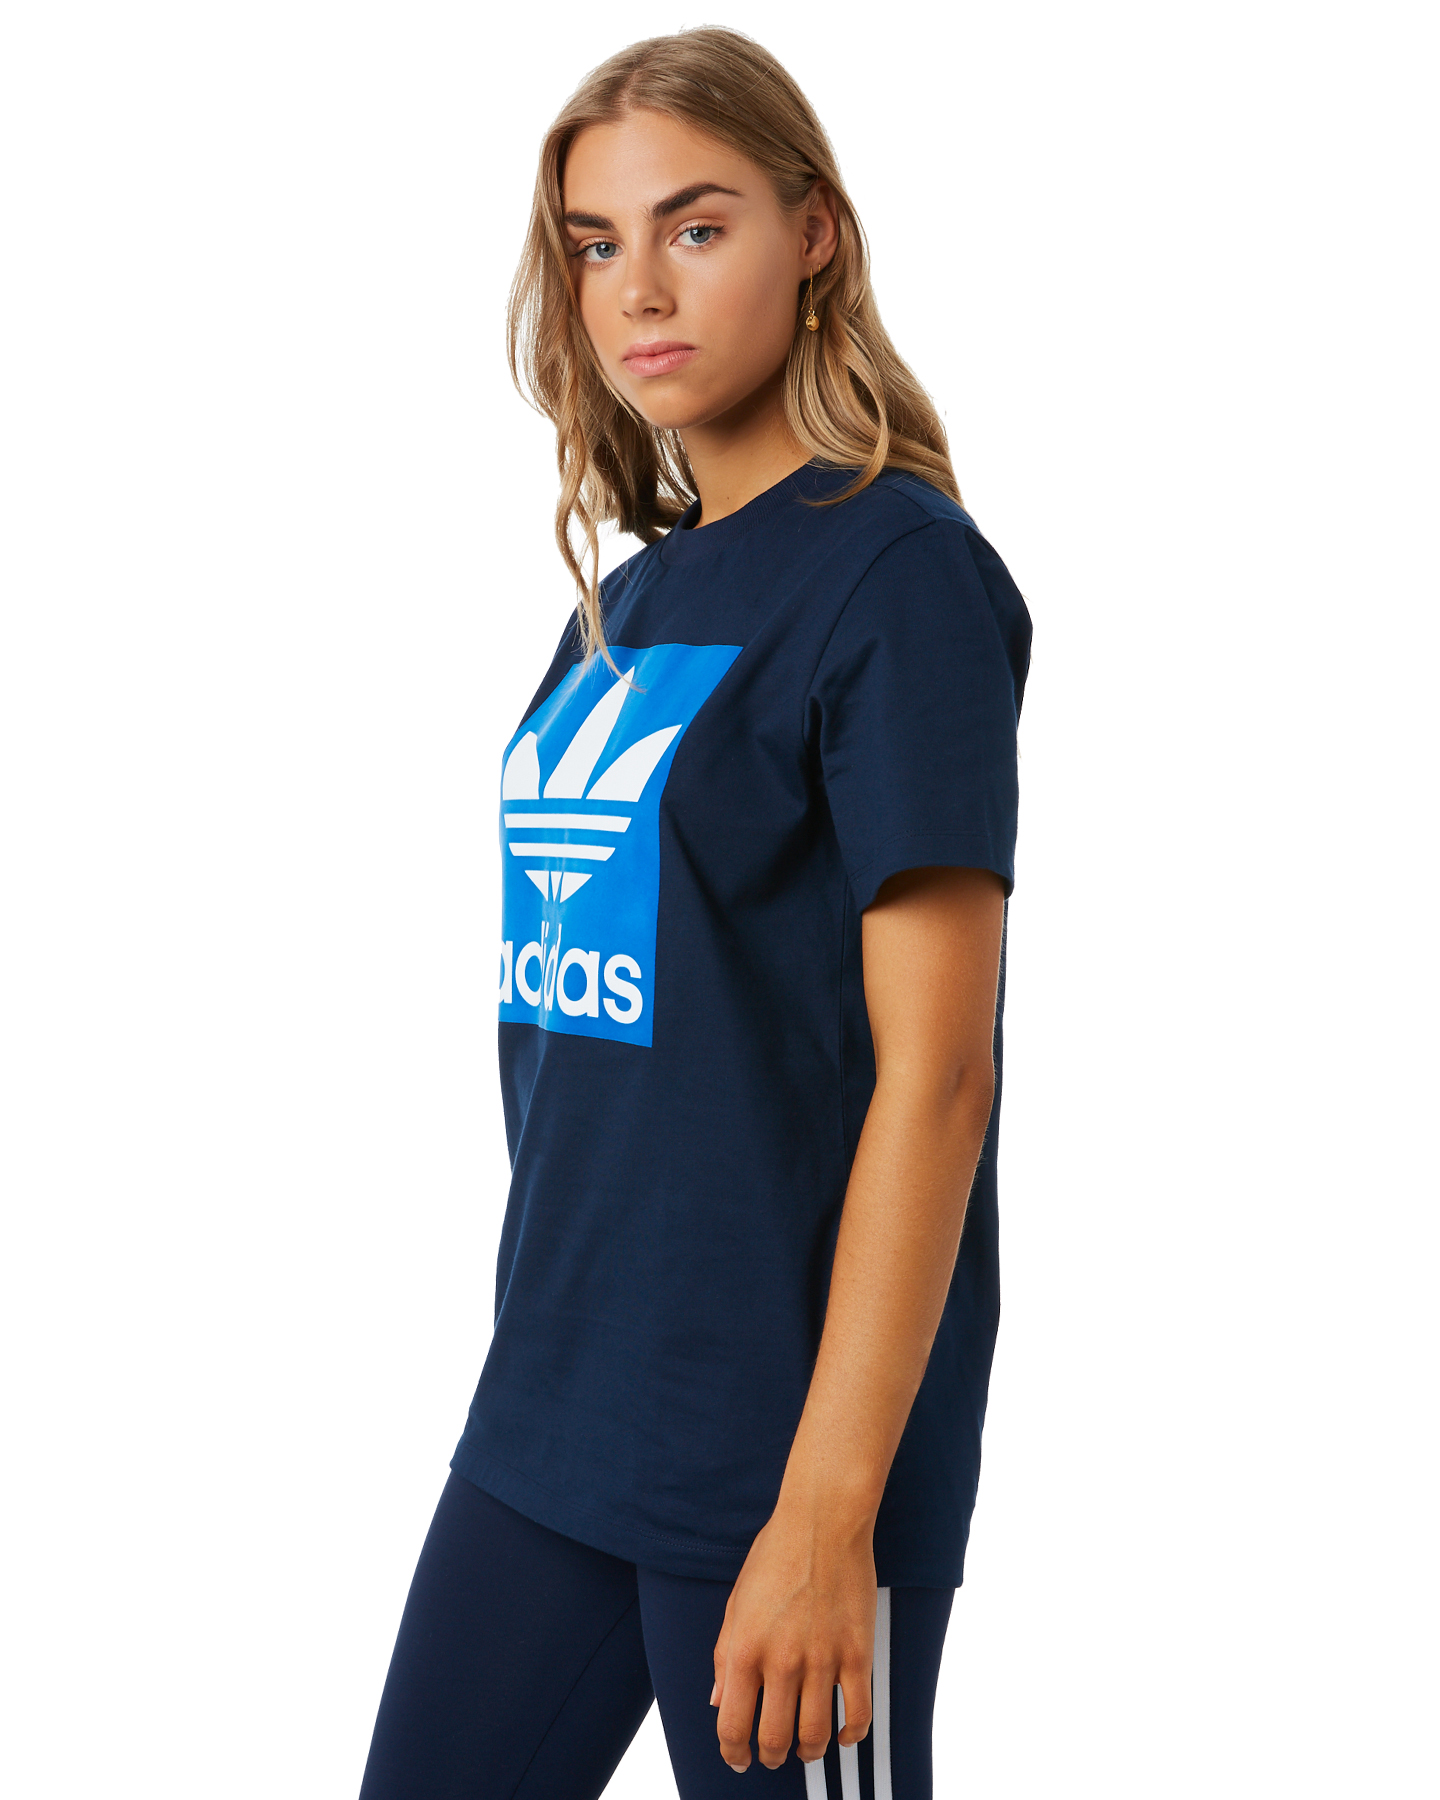 Adidas Womens Bf Tee - Collegiate Navy | SurfStitch